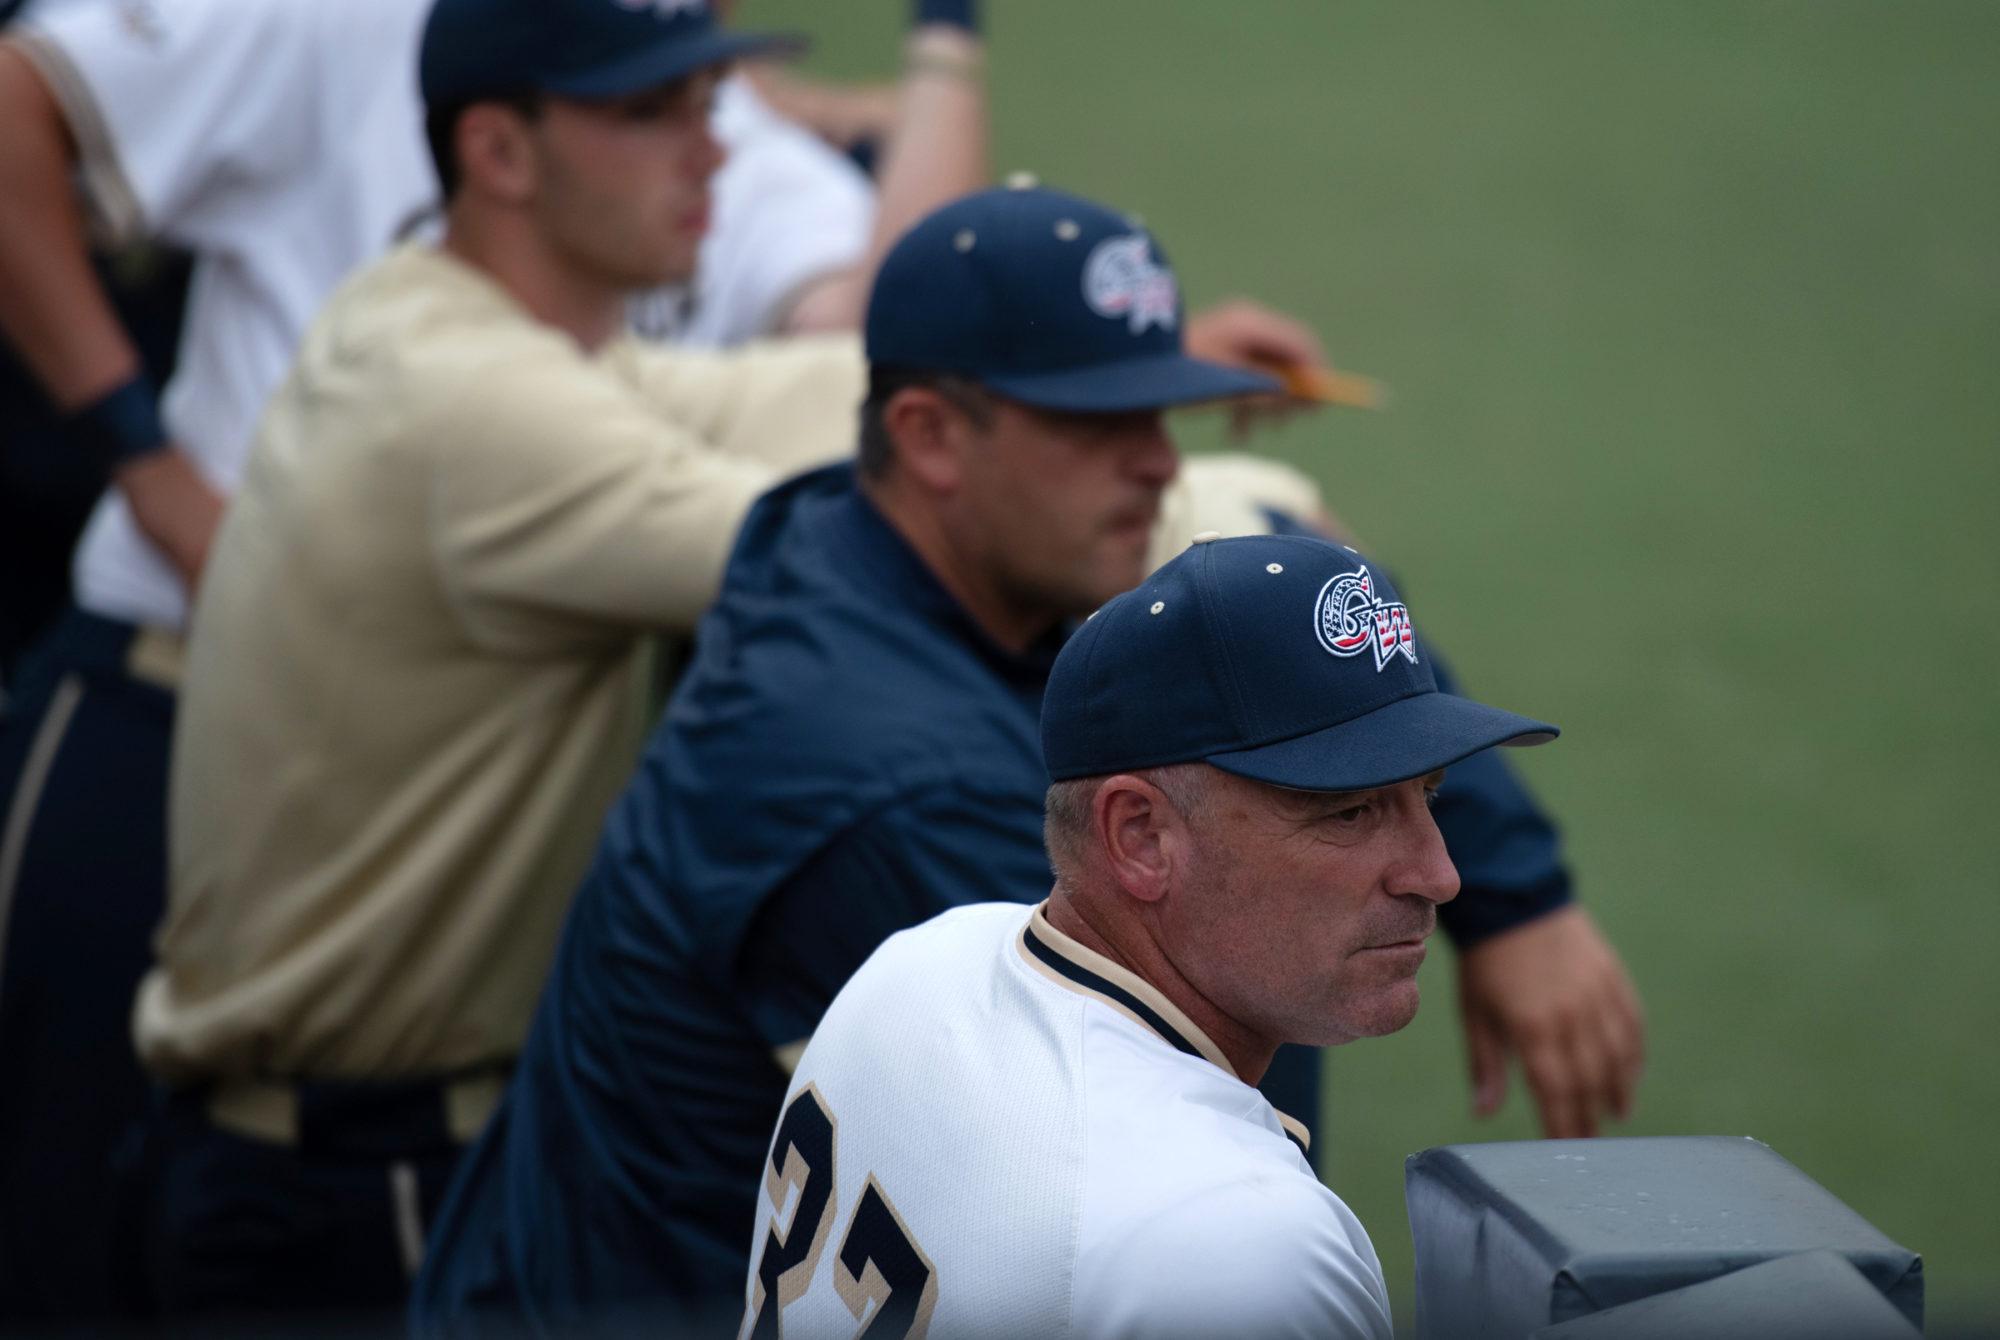 Head baseball coach Gregg Ritchie said his team handled the season cancella...